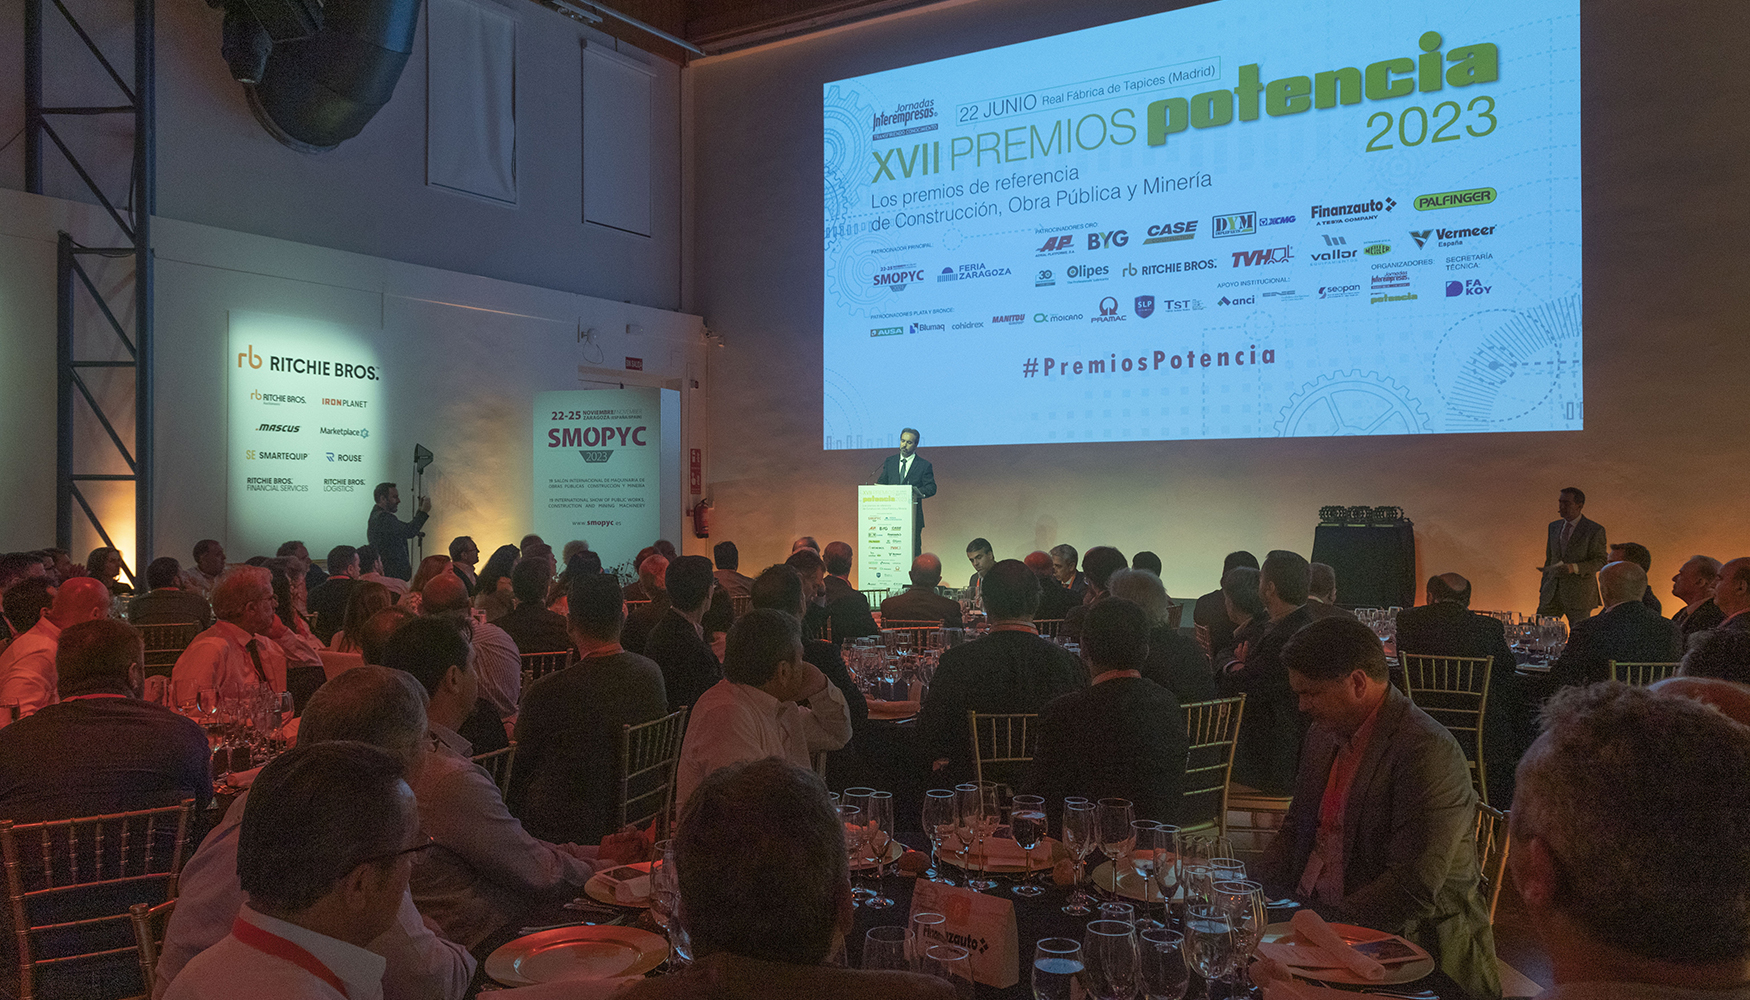 La pasada edicin de los Premios Potencia congreg a 250 asistentes en la Real Fbrica de Tapices de Madrid